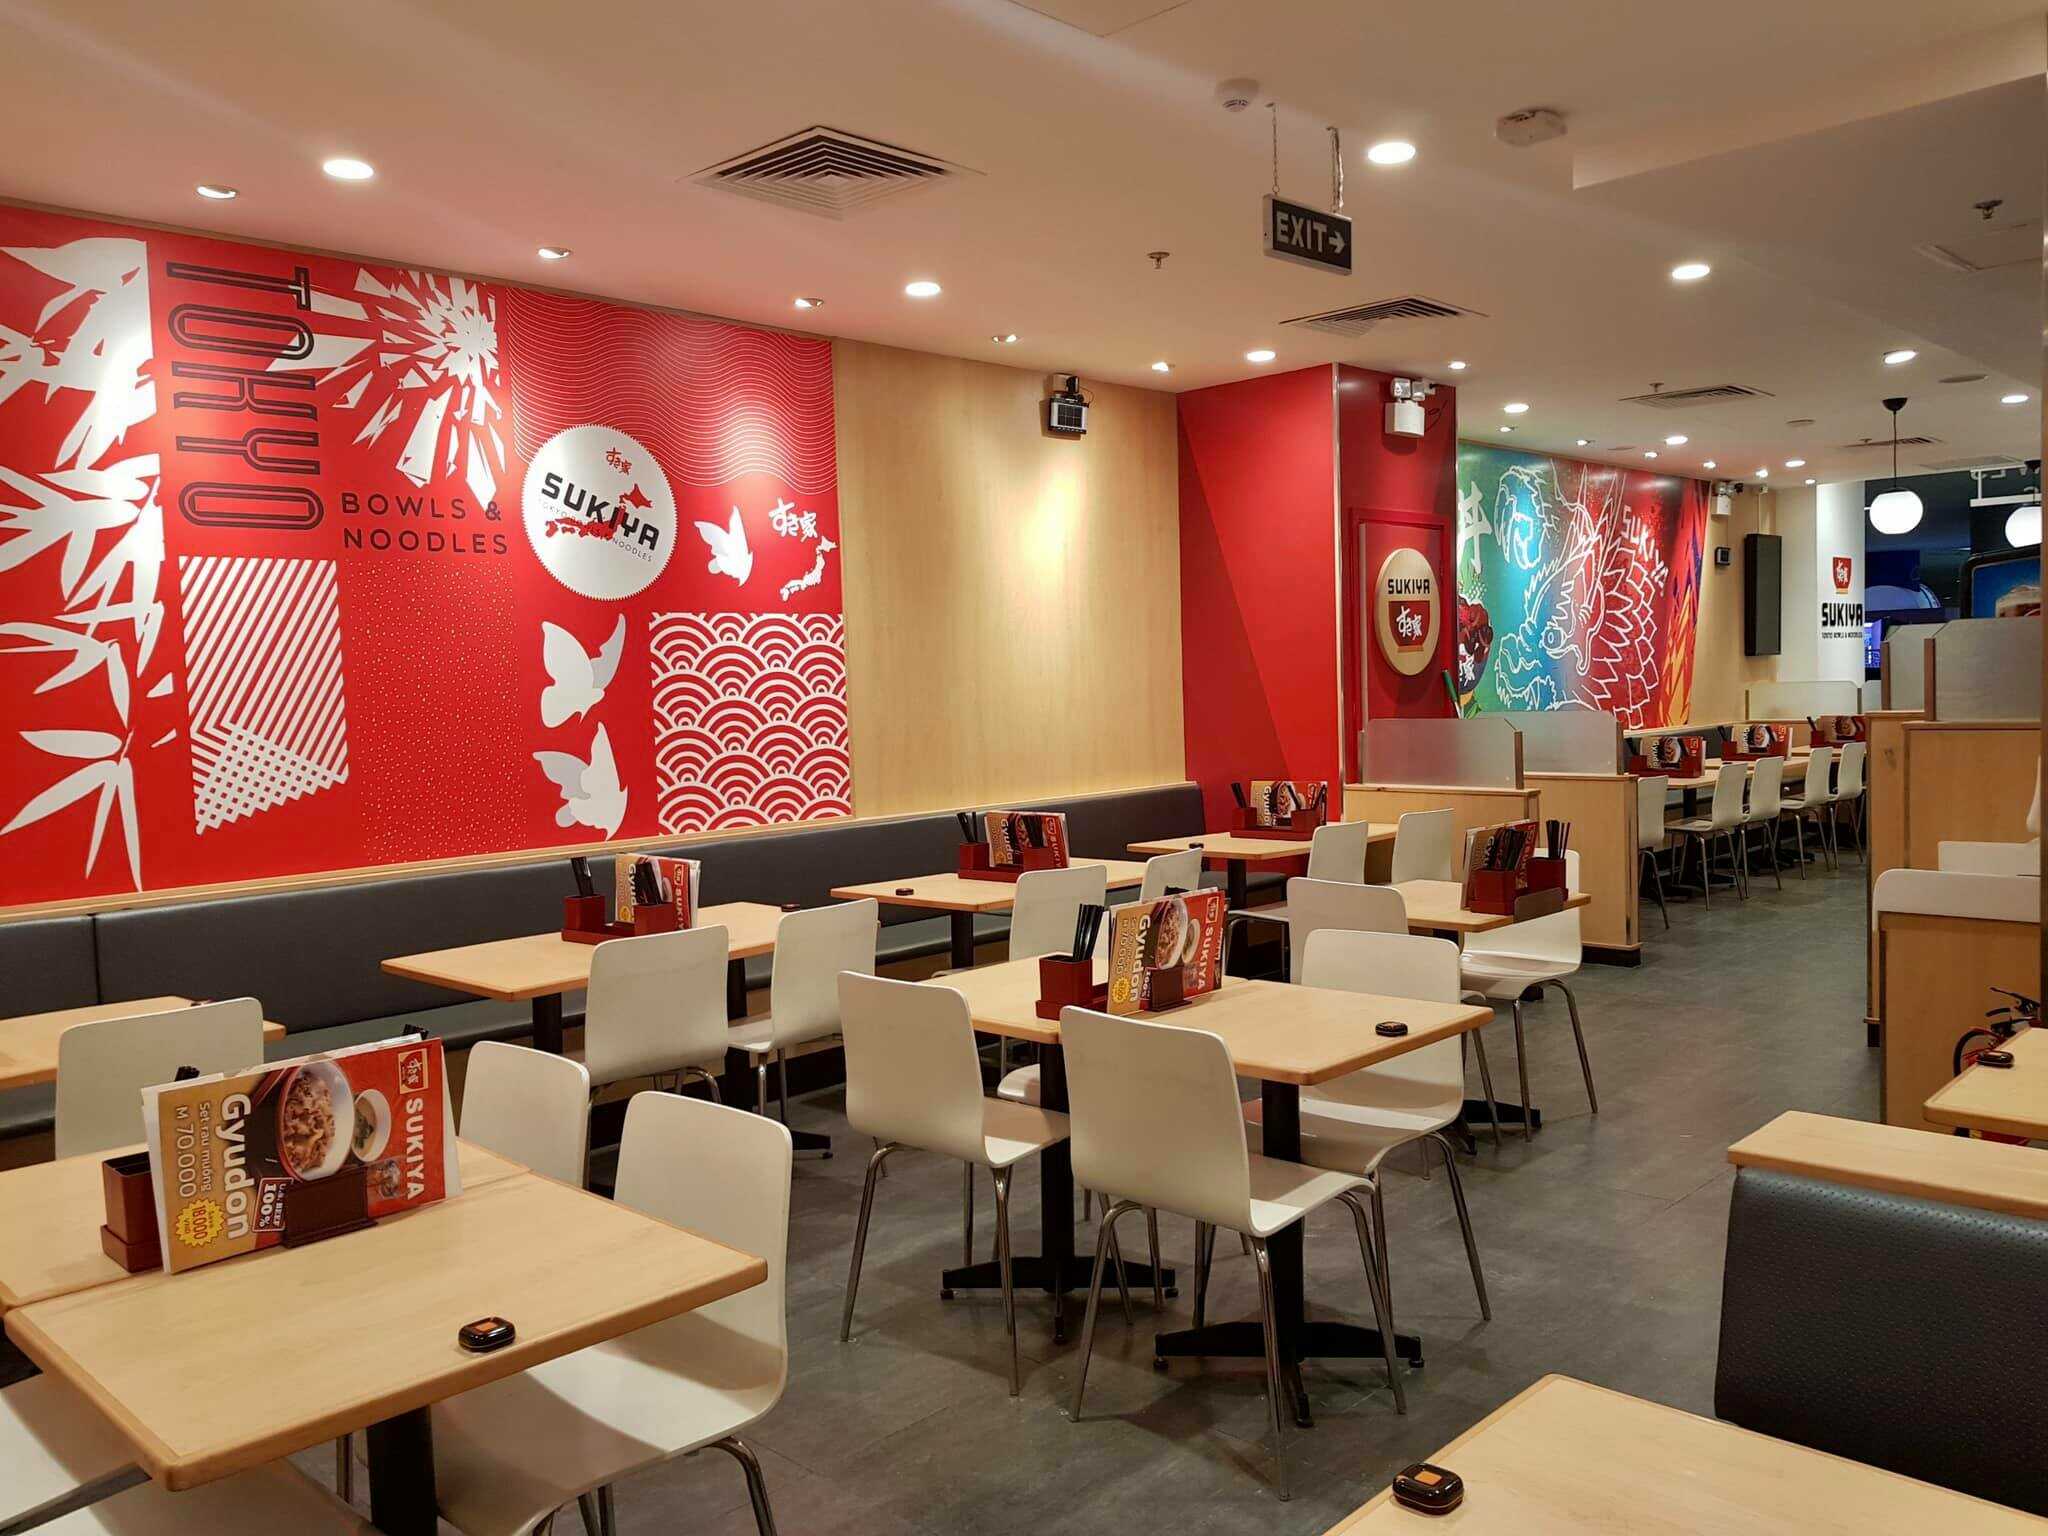 Review nhà hàng Sukiya Việt Nam: Menu, bảng giá, chi nhánh & khuyến mãi